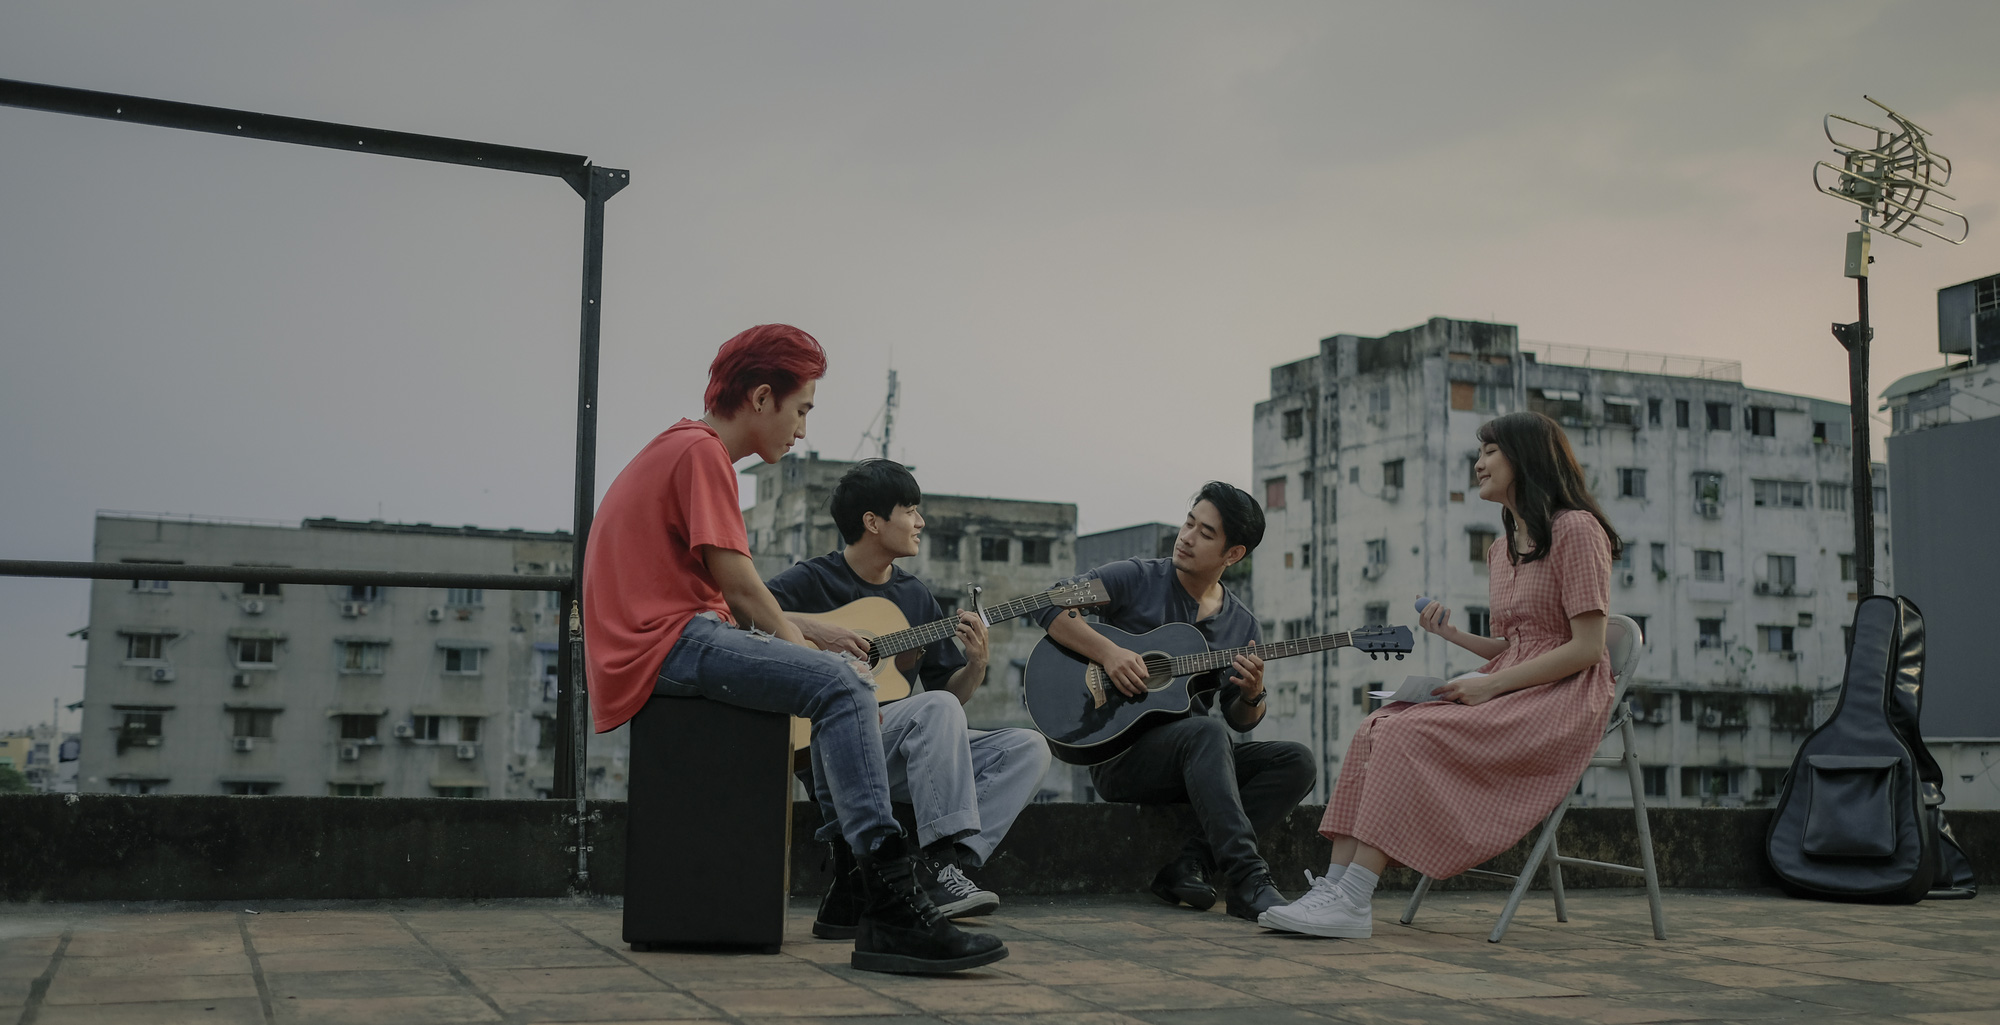 Sài Gòn Trong Cơn Mưa: Thước phim non trẻ nhưng đầy cảm xúc dành cho những kẻ khờ mộng mơ của phương Nam - Ảnh 5.